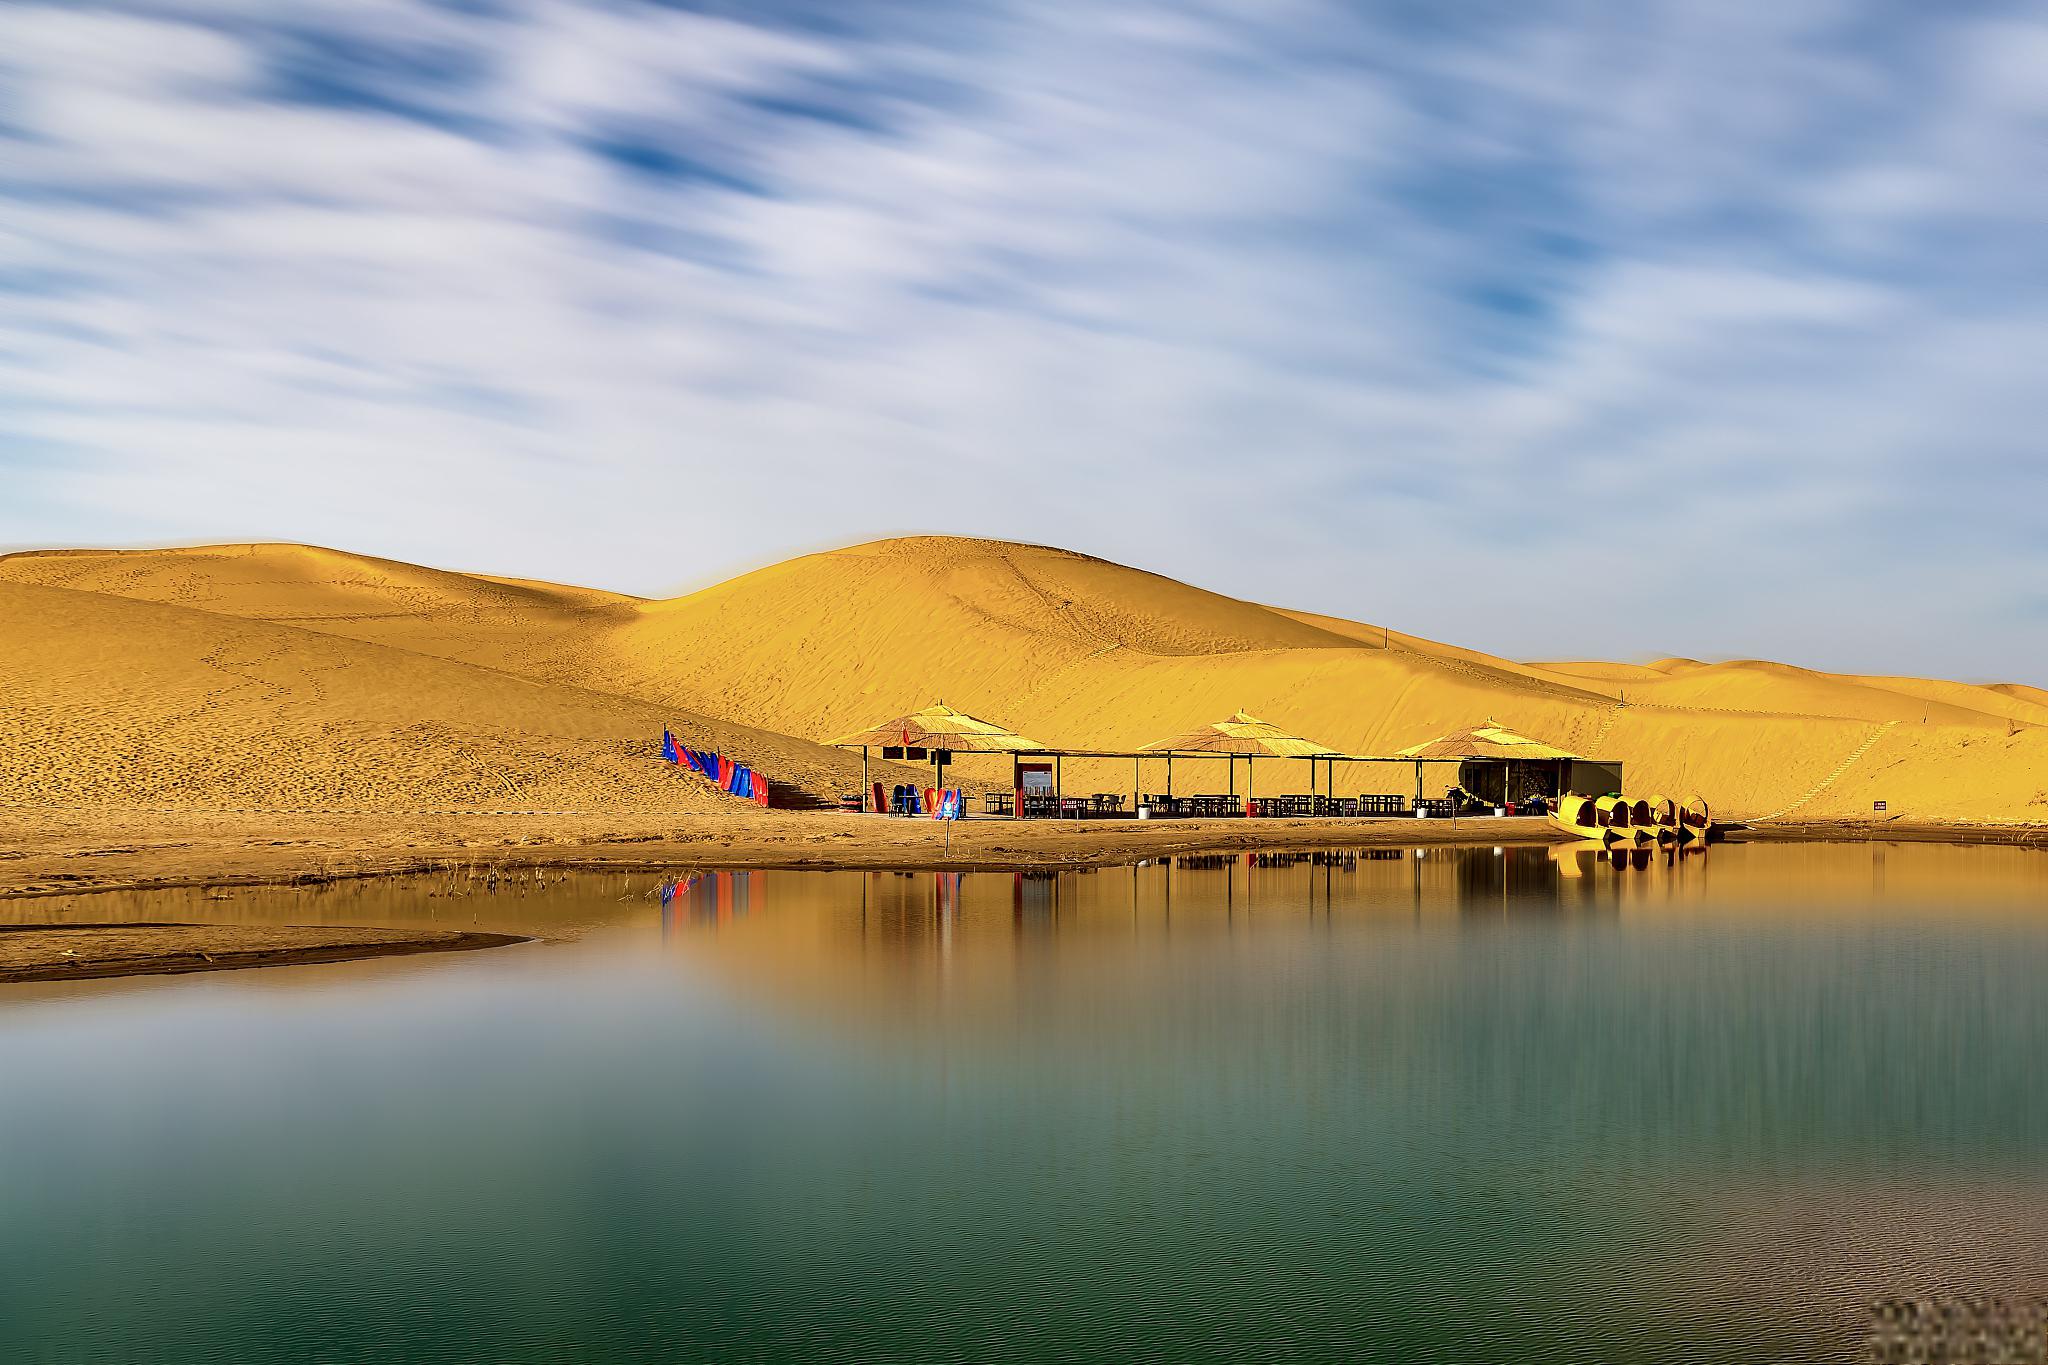 嘉峪关市秋季旅游景点推荐 嘉峪关市位于甘肃省的西北部,是一个充满